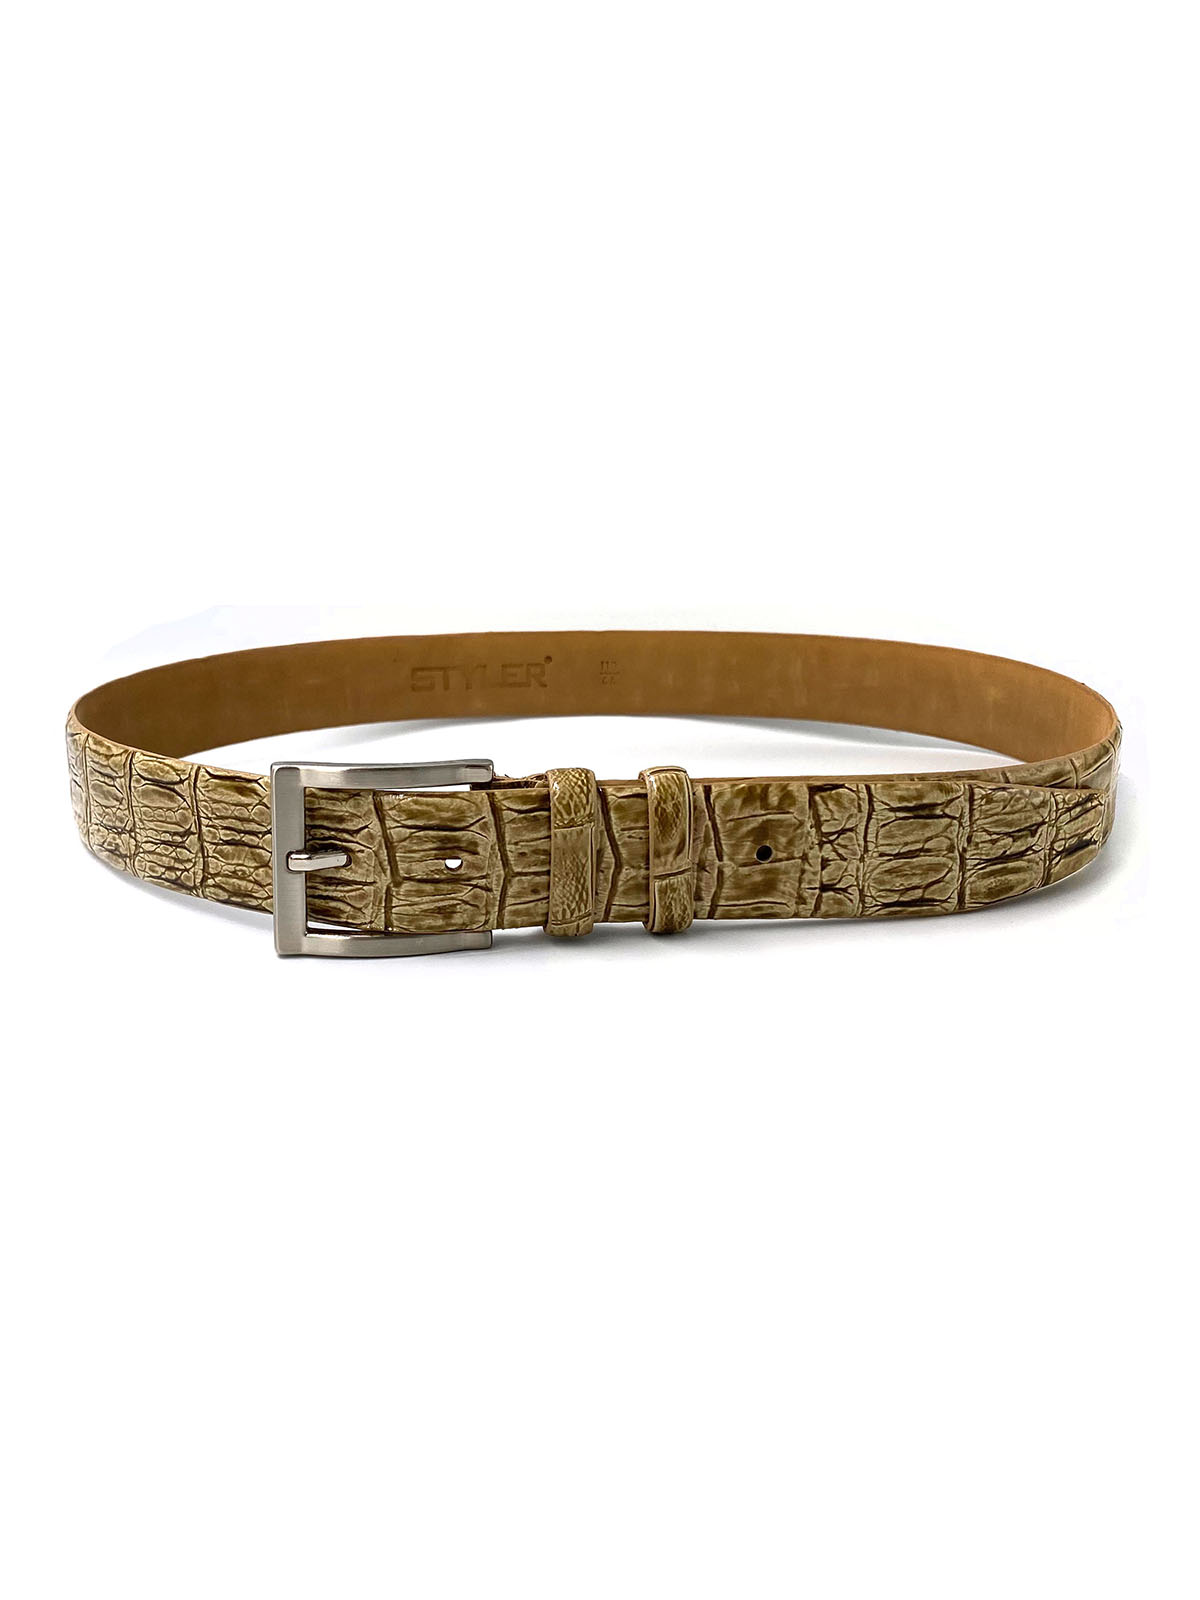 Luxury leather belt - 10410 - € 10.12 img2